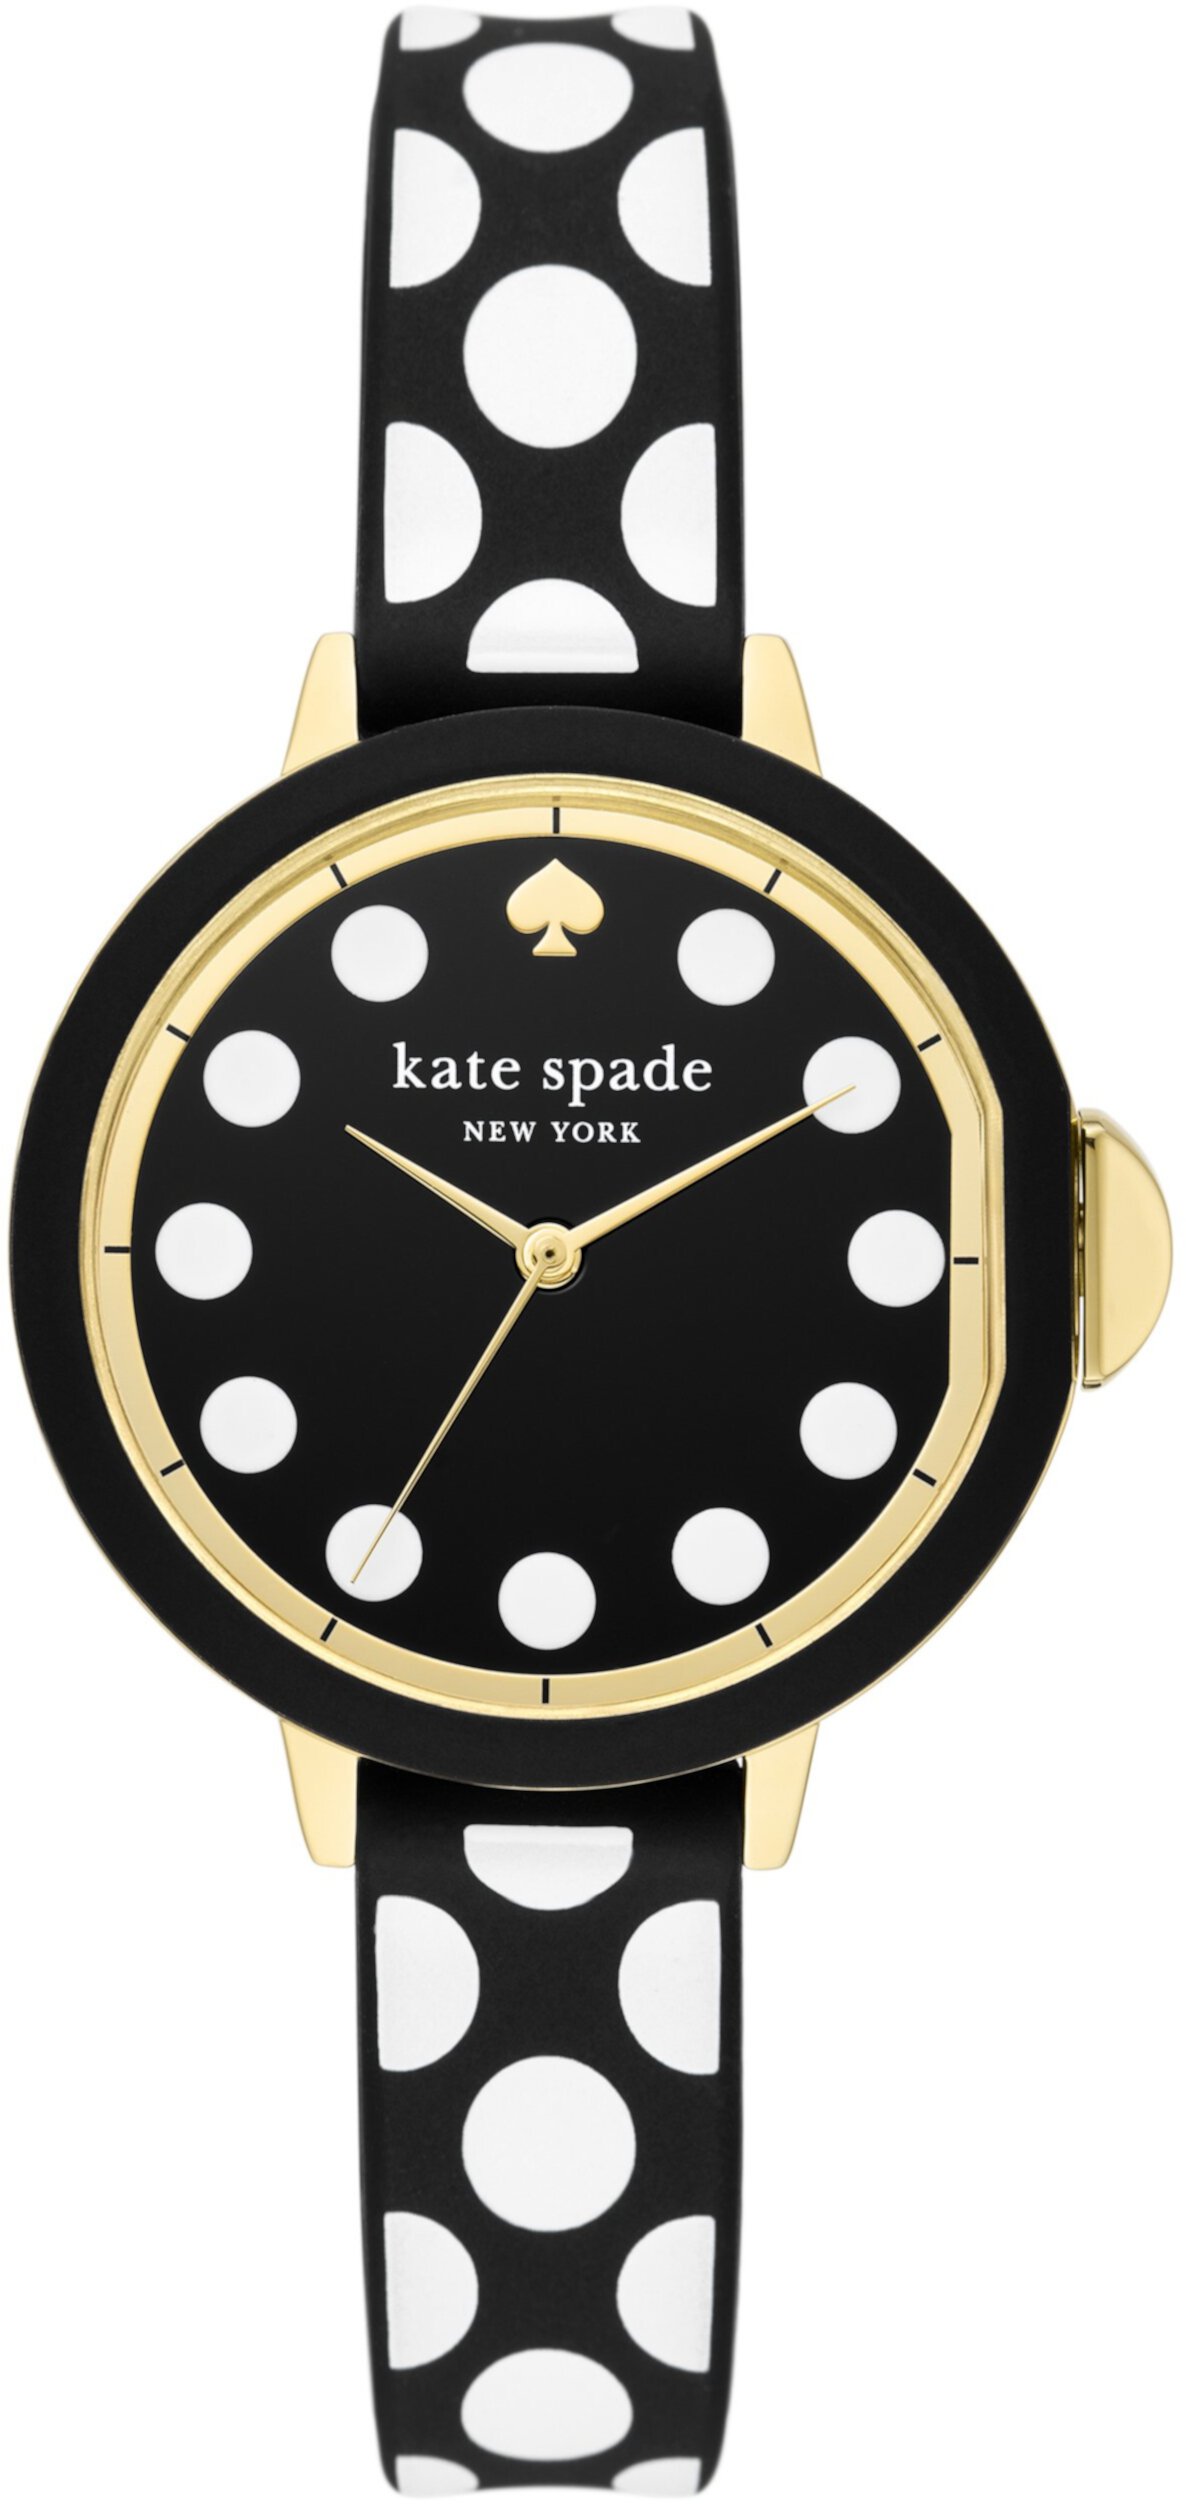 Силиконовые часы Park Row с тремя стрелками в горошек — KSW1812 Kate Spade New York